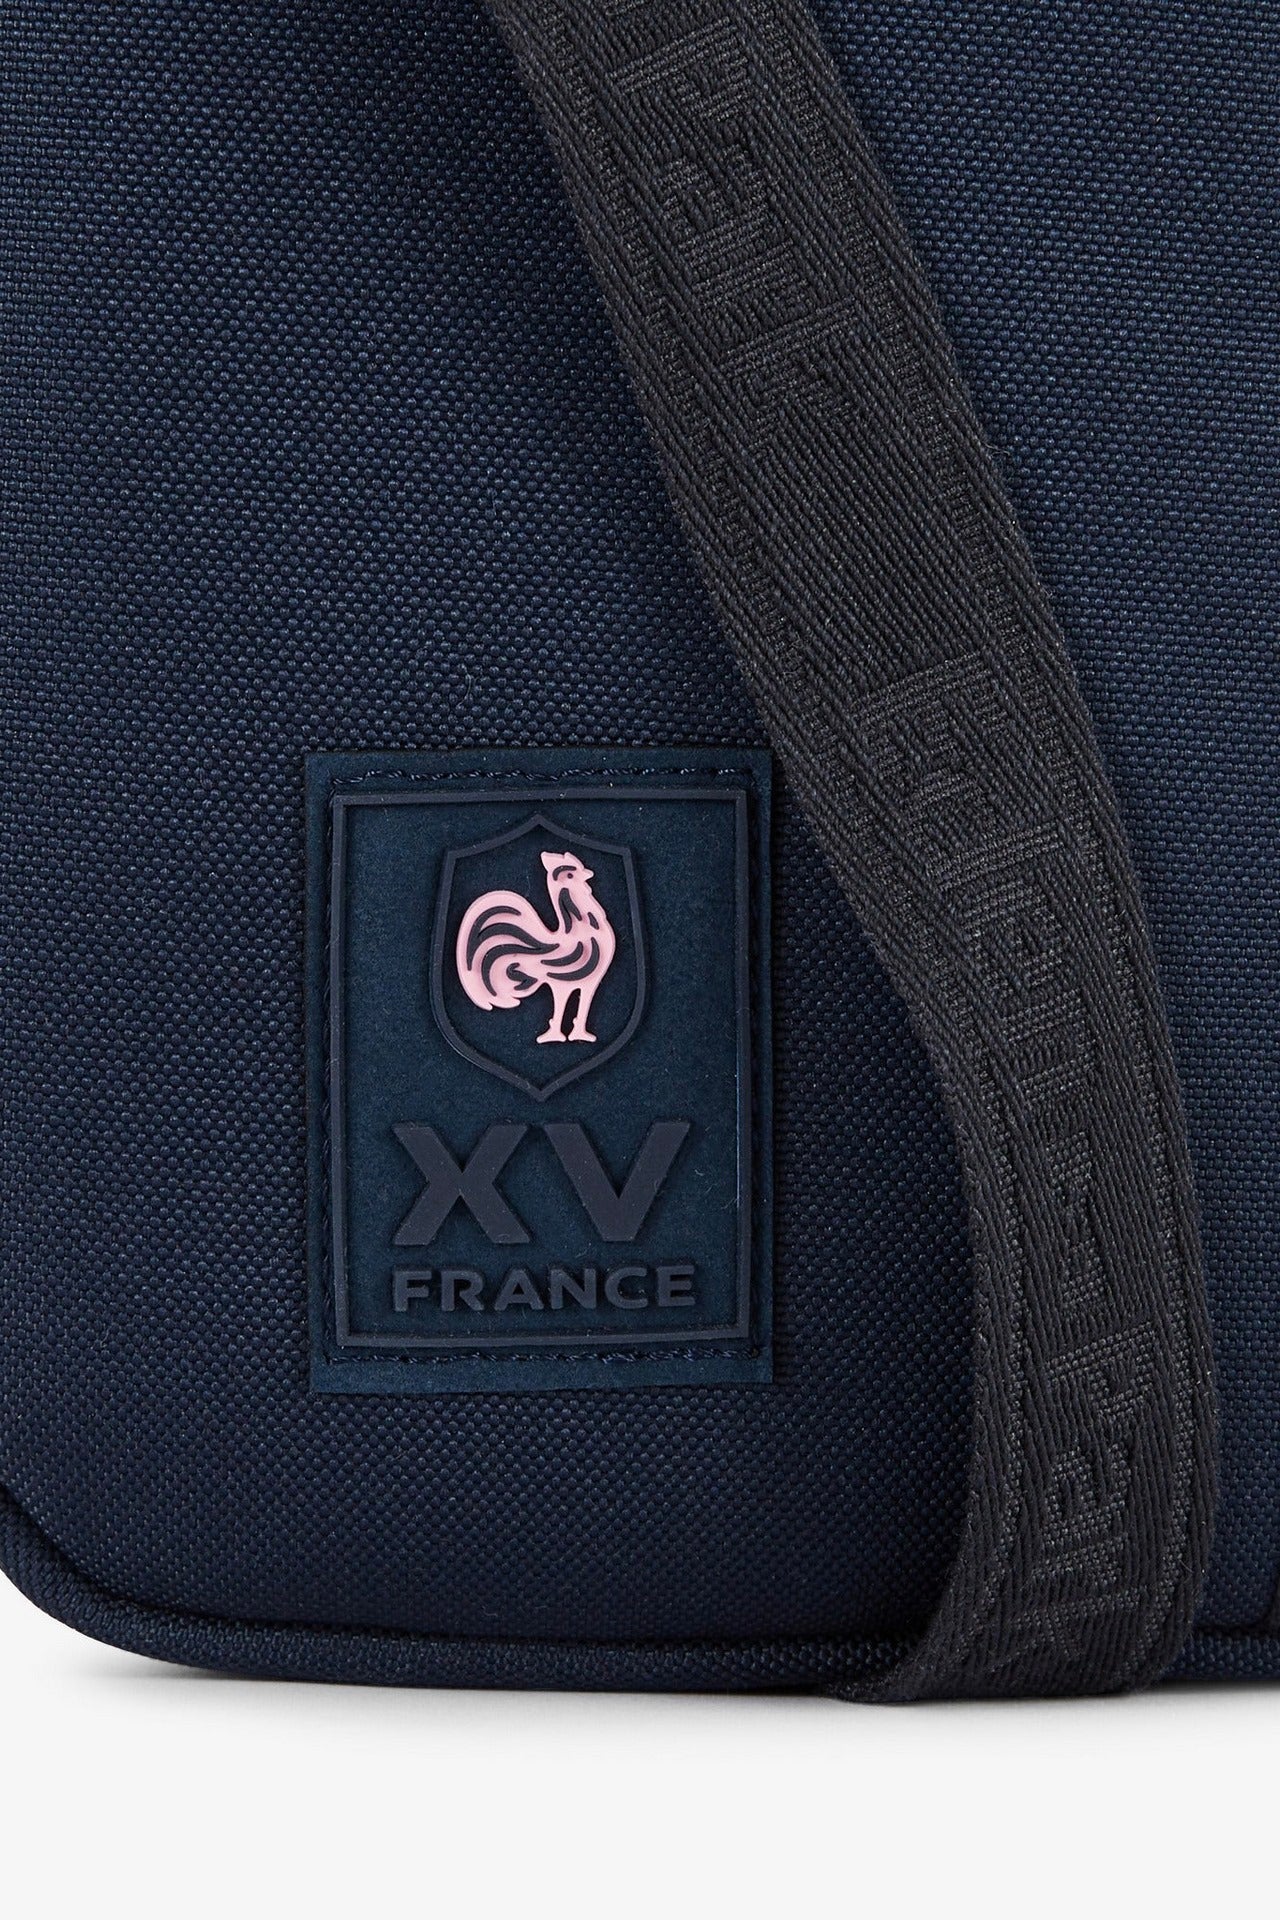 Besace unie XV de France - Image 5